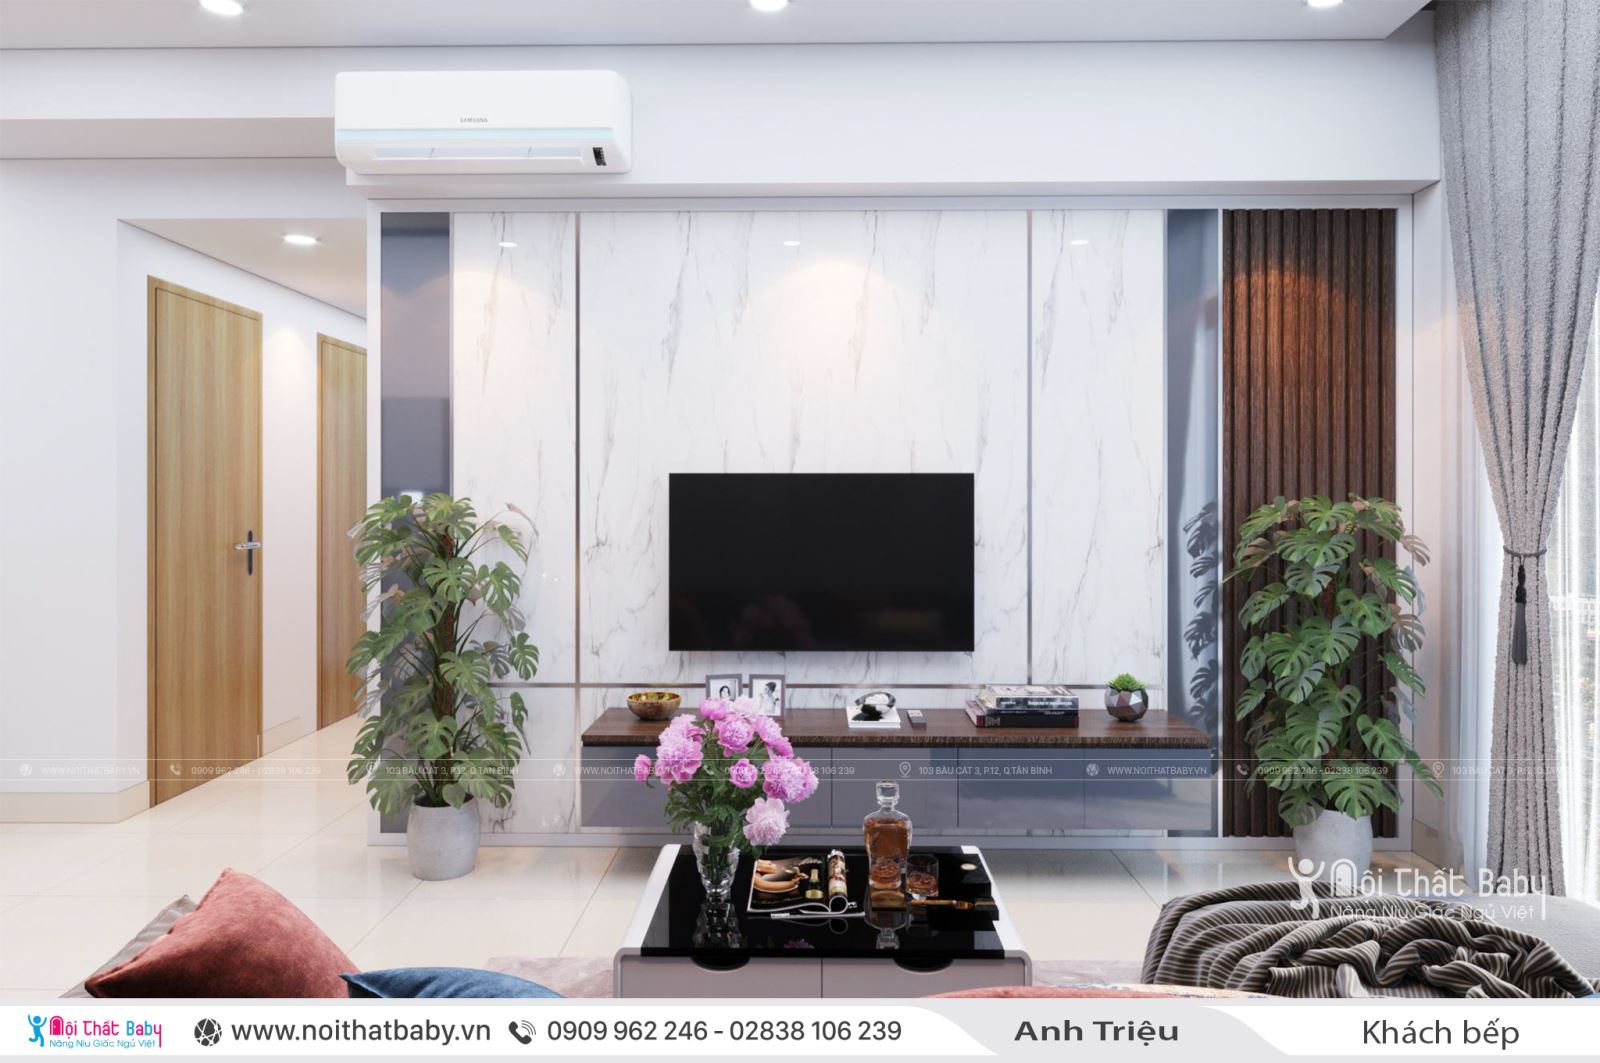 Thiết kế nội thất nguyên căn nhà anh Triệu tại Emerald Celadon City 72m2